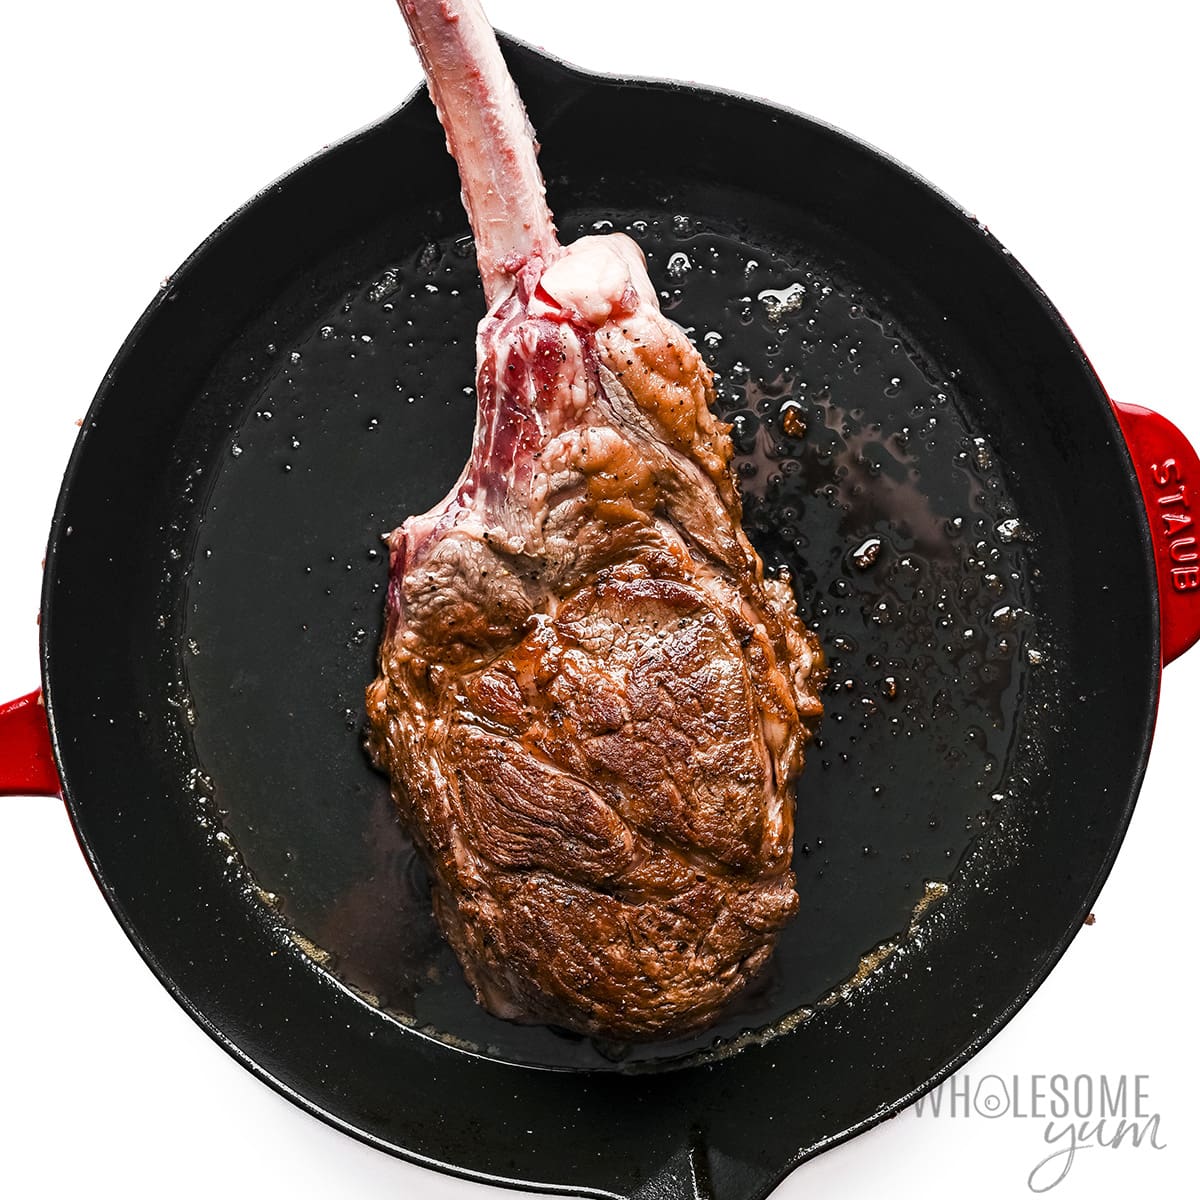 Seared steak in a cast iron skillet.